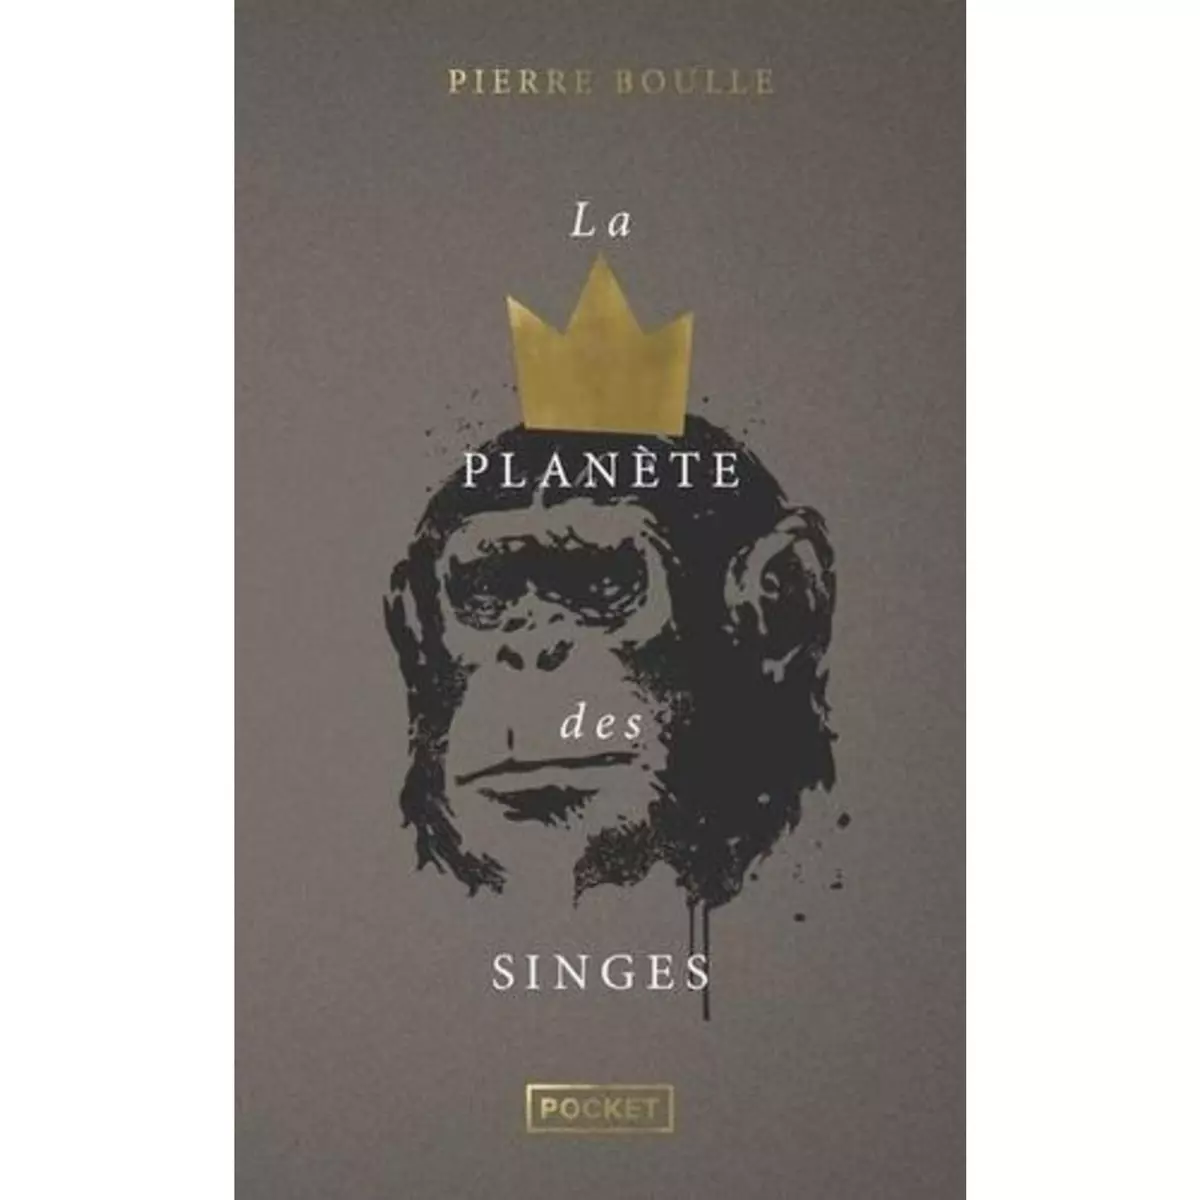  LA PLANETE DES SINGES. EDITION COLLECTOR, Boulle Pierre